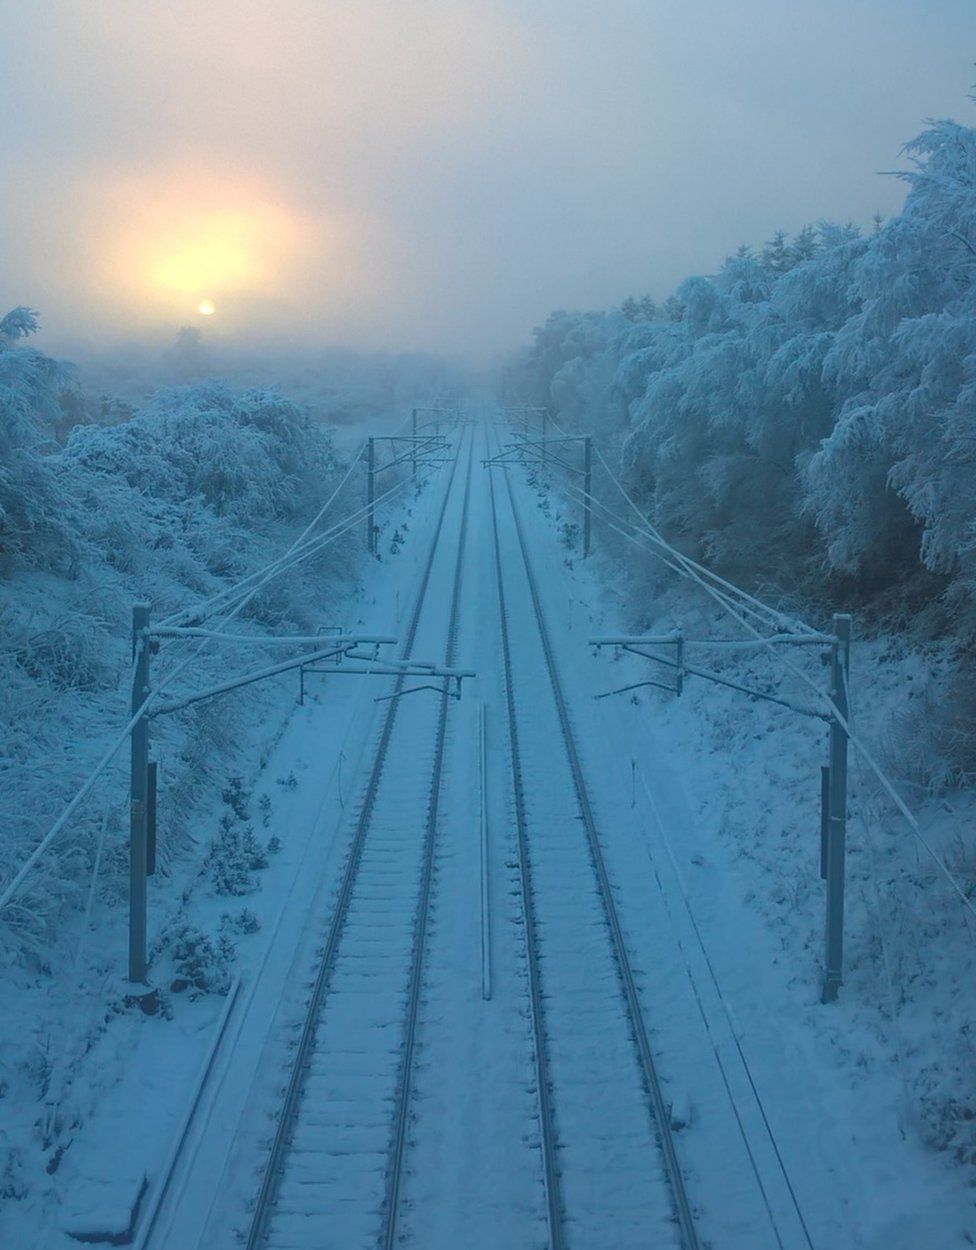 Snowy rail track